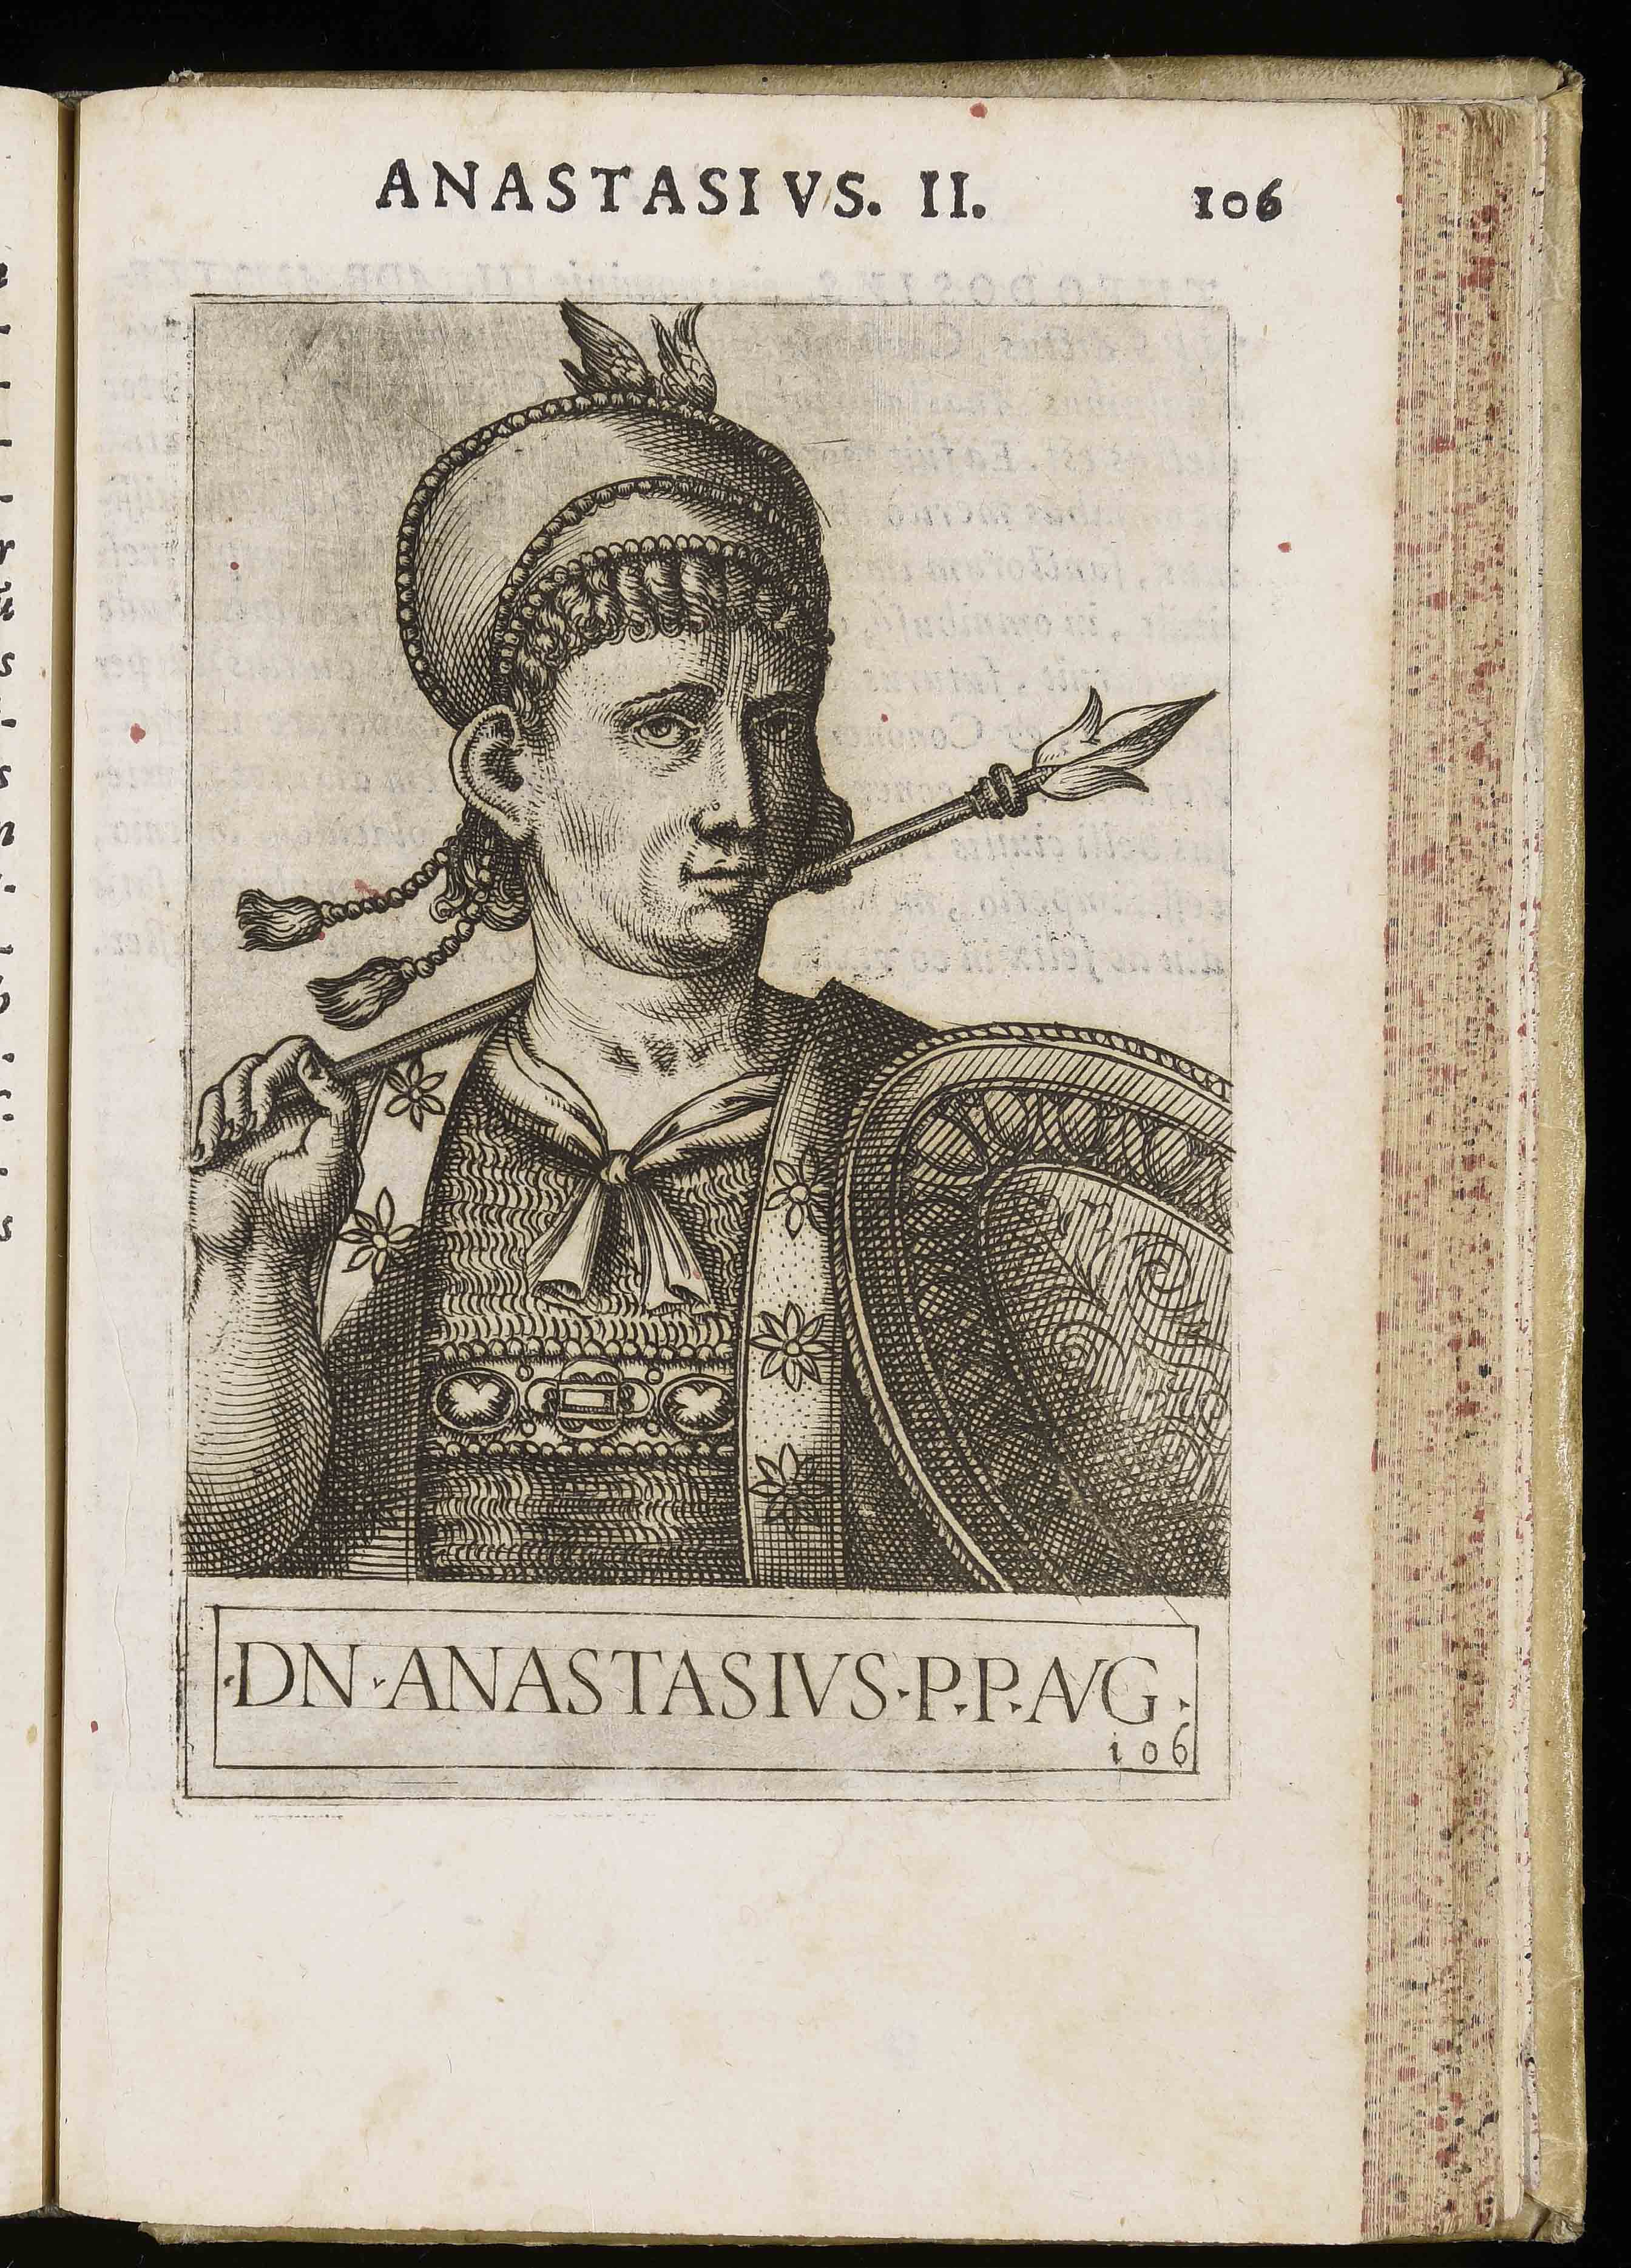 Anastasios II